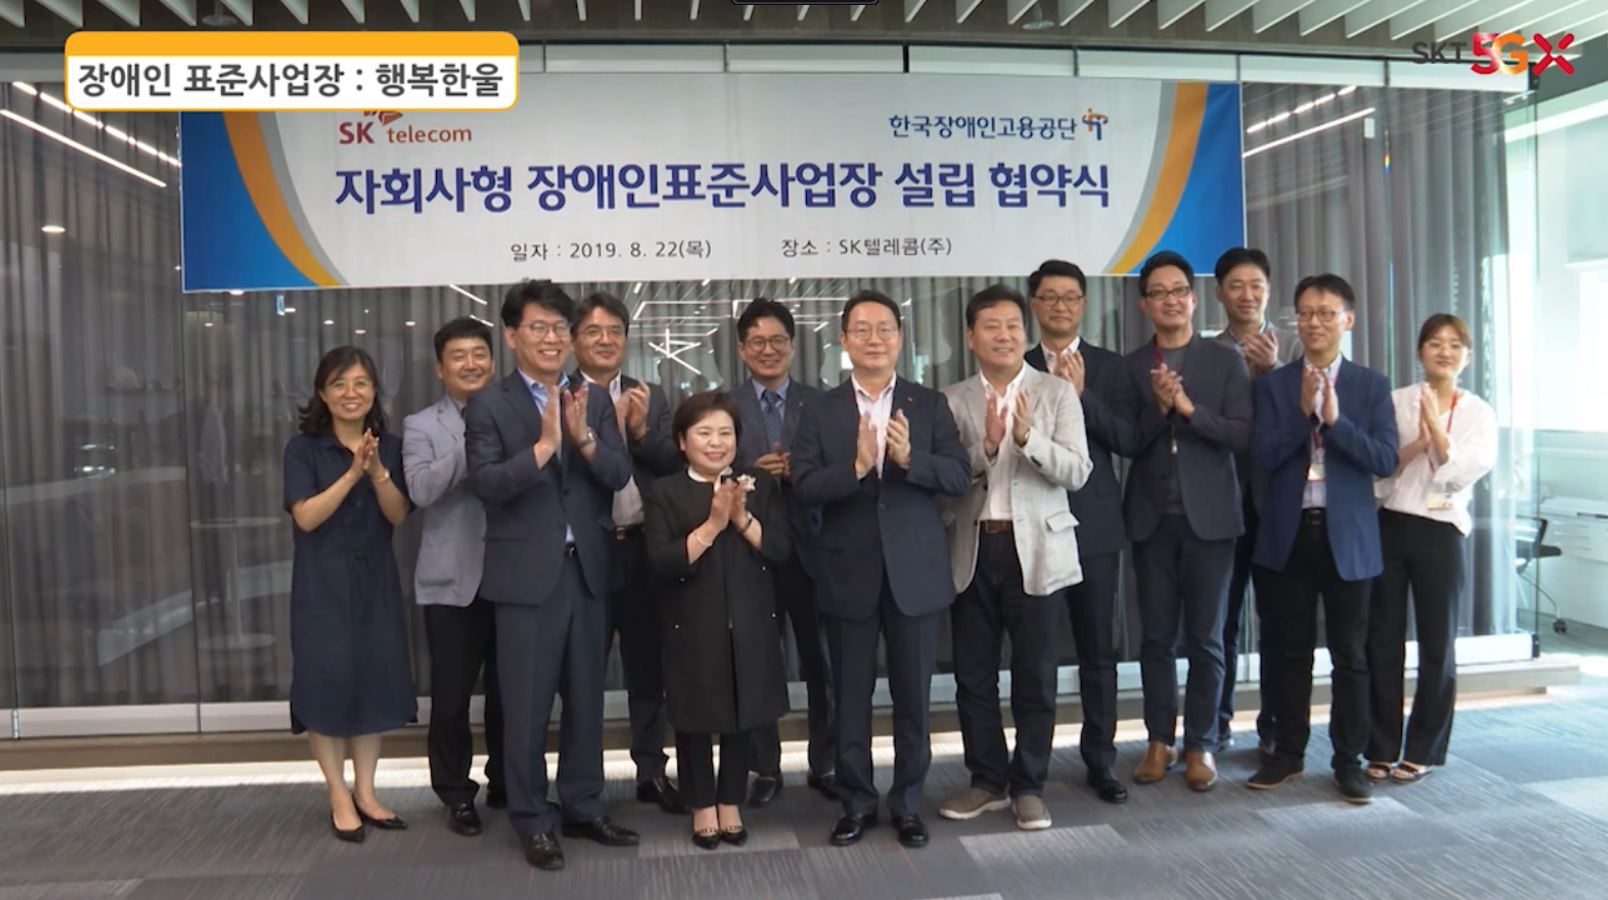 集体纪念照 - 残疾人标准工作场所：韩国残疾人职业介绍所兴福毛 残疾人标准工作场所设立协议仪式（'19.8.22） 日期：2019年8月22日（星期四） 地点：SK Telecom Co.,有限公司